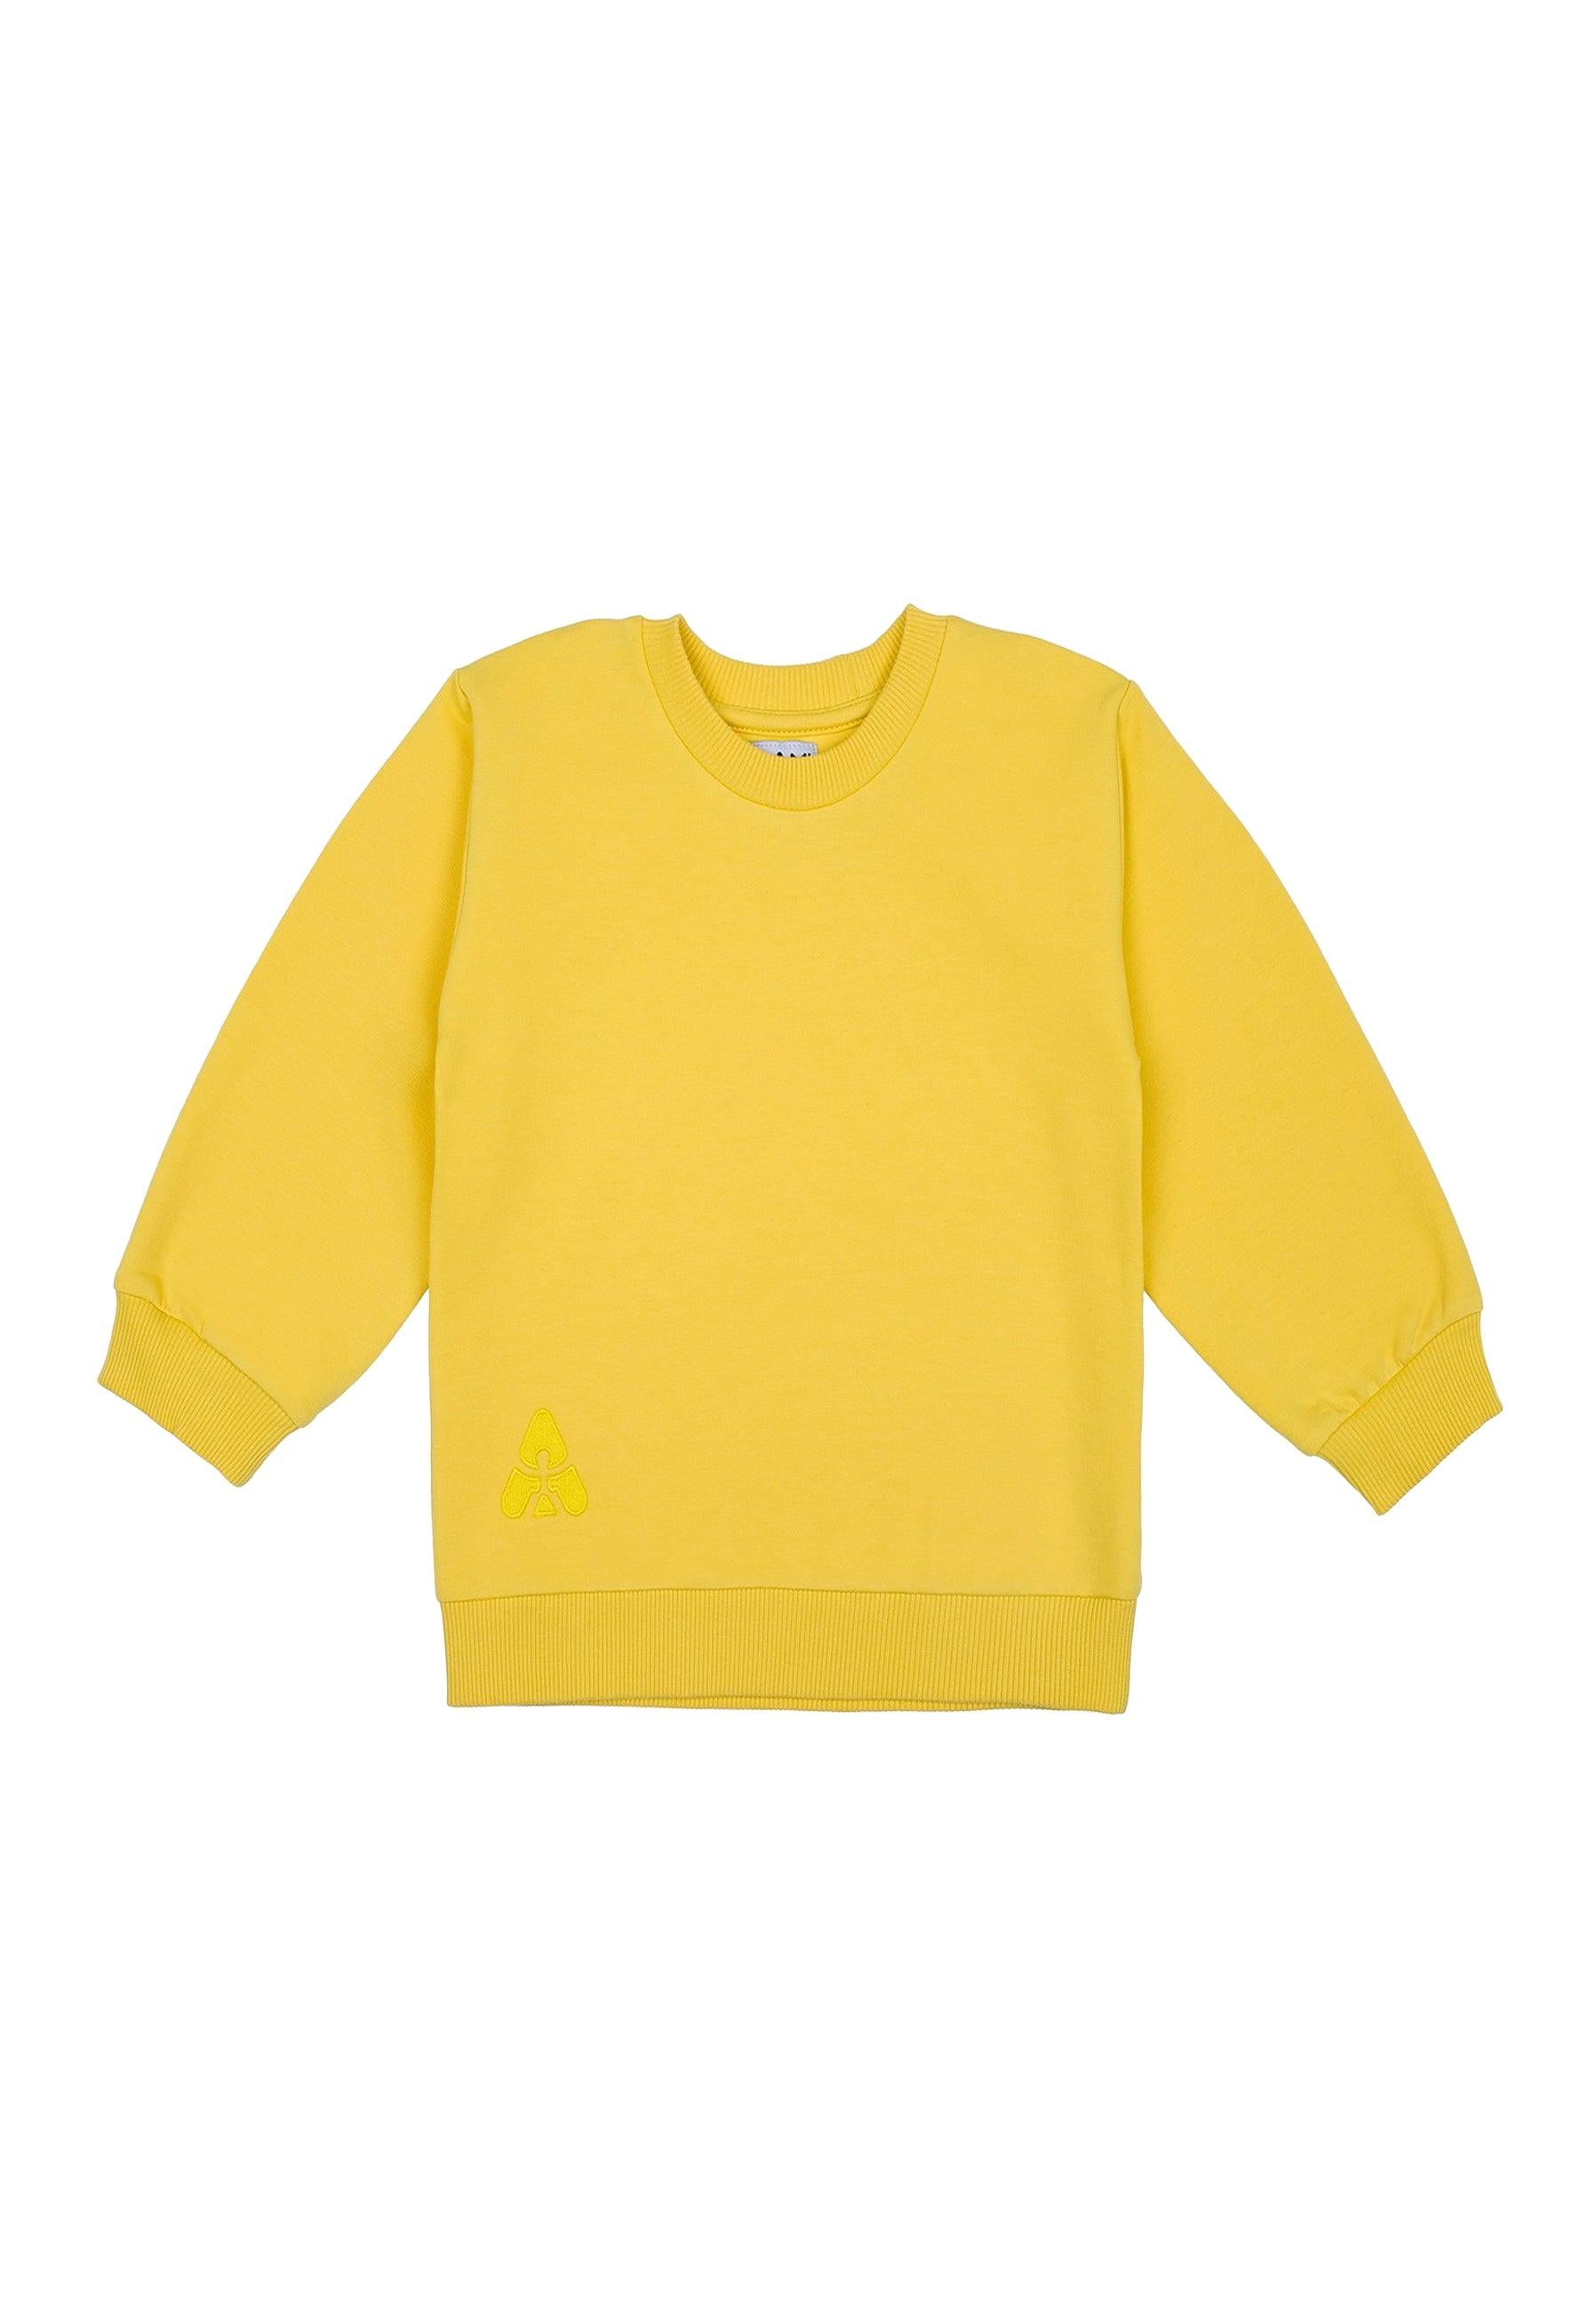 Silicium Stap Universeel Sweatshirt met lange mouwen geel – Alisé kids